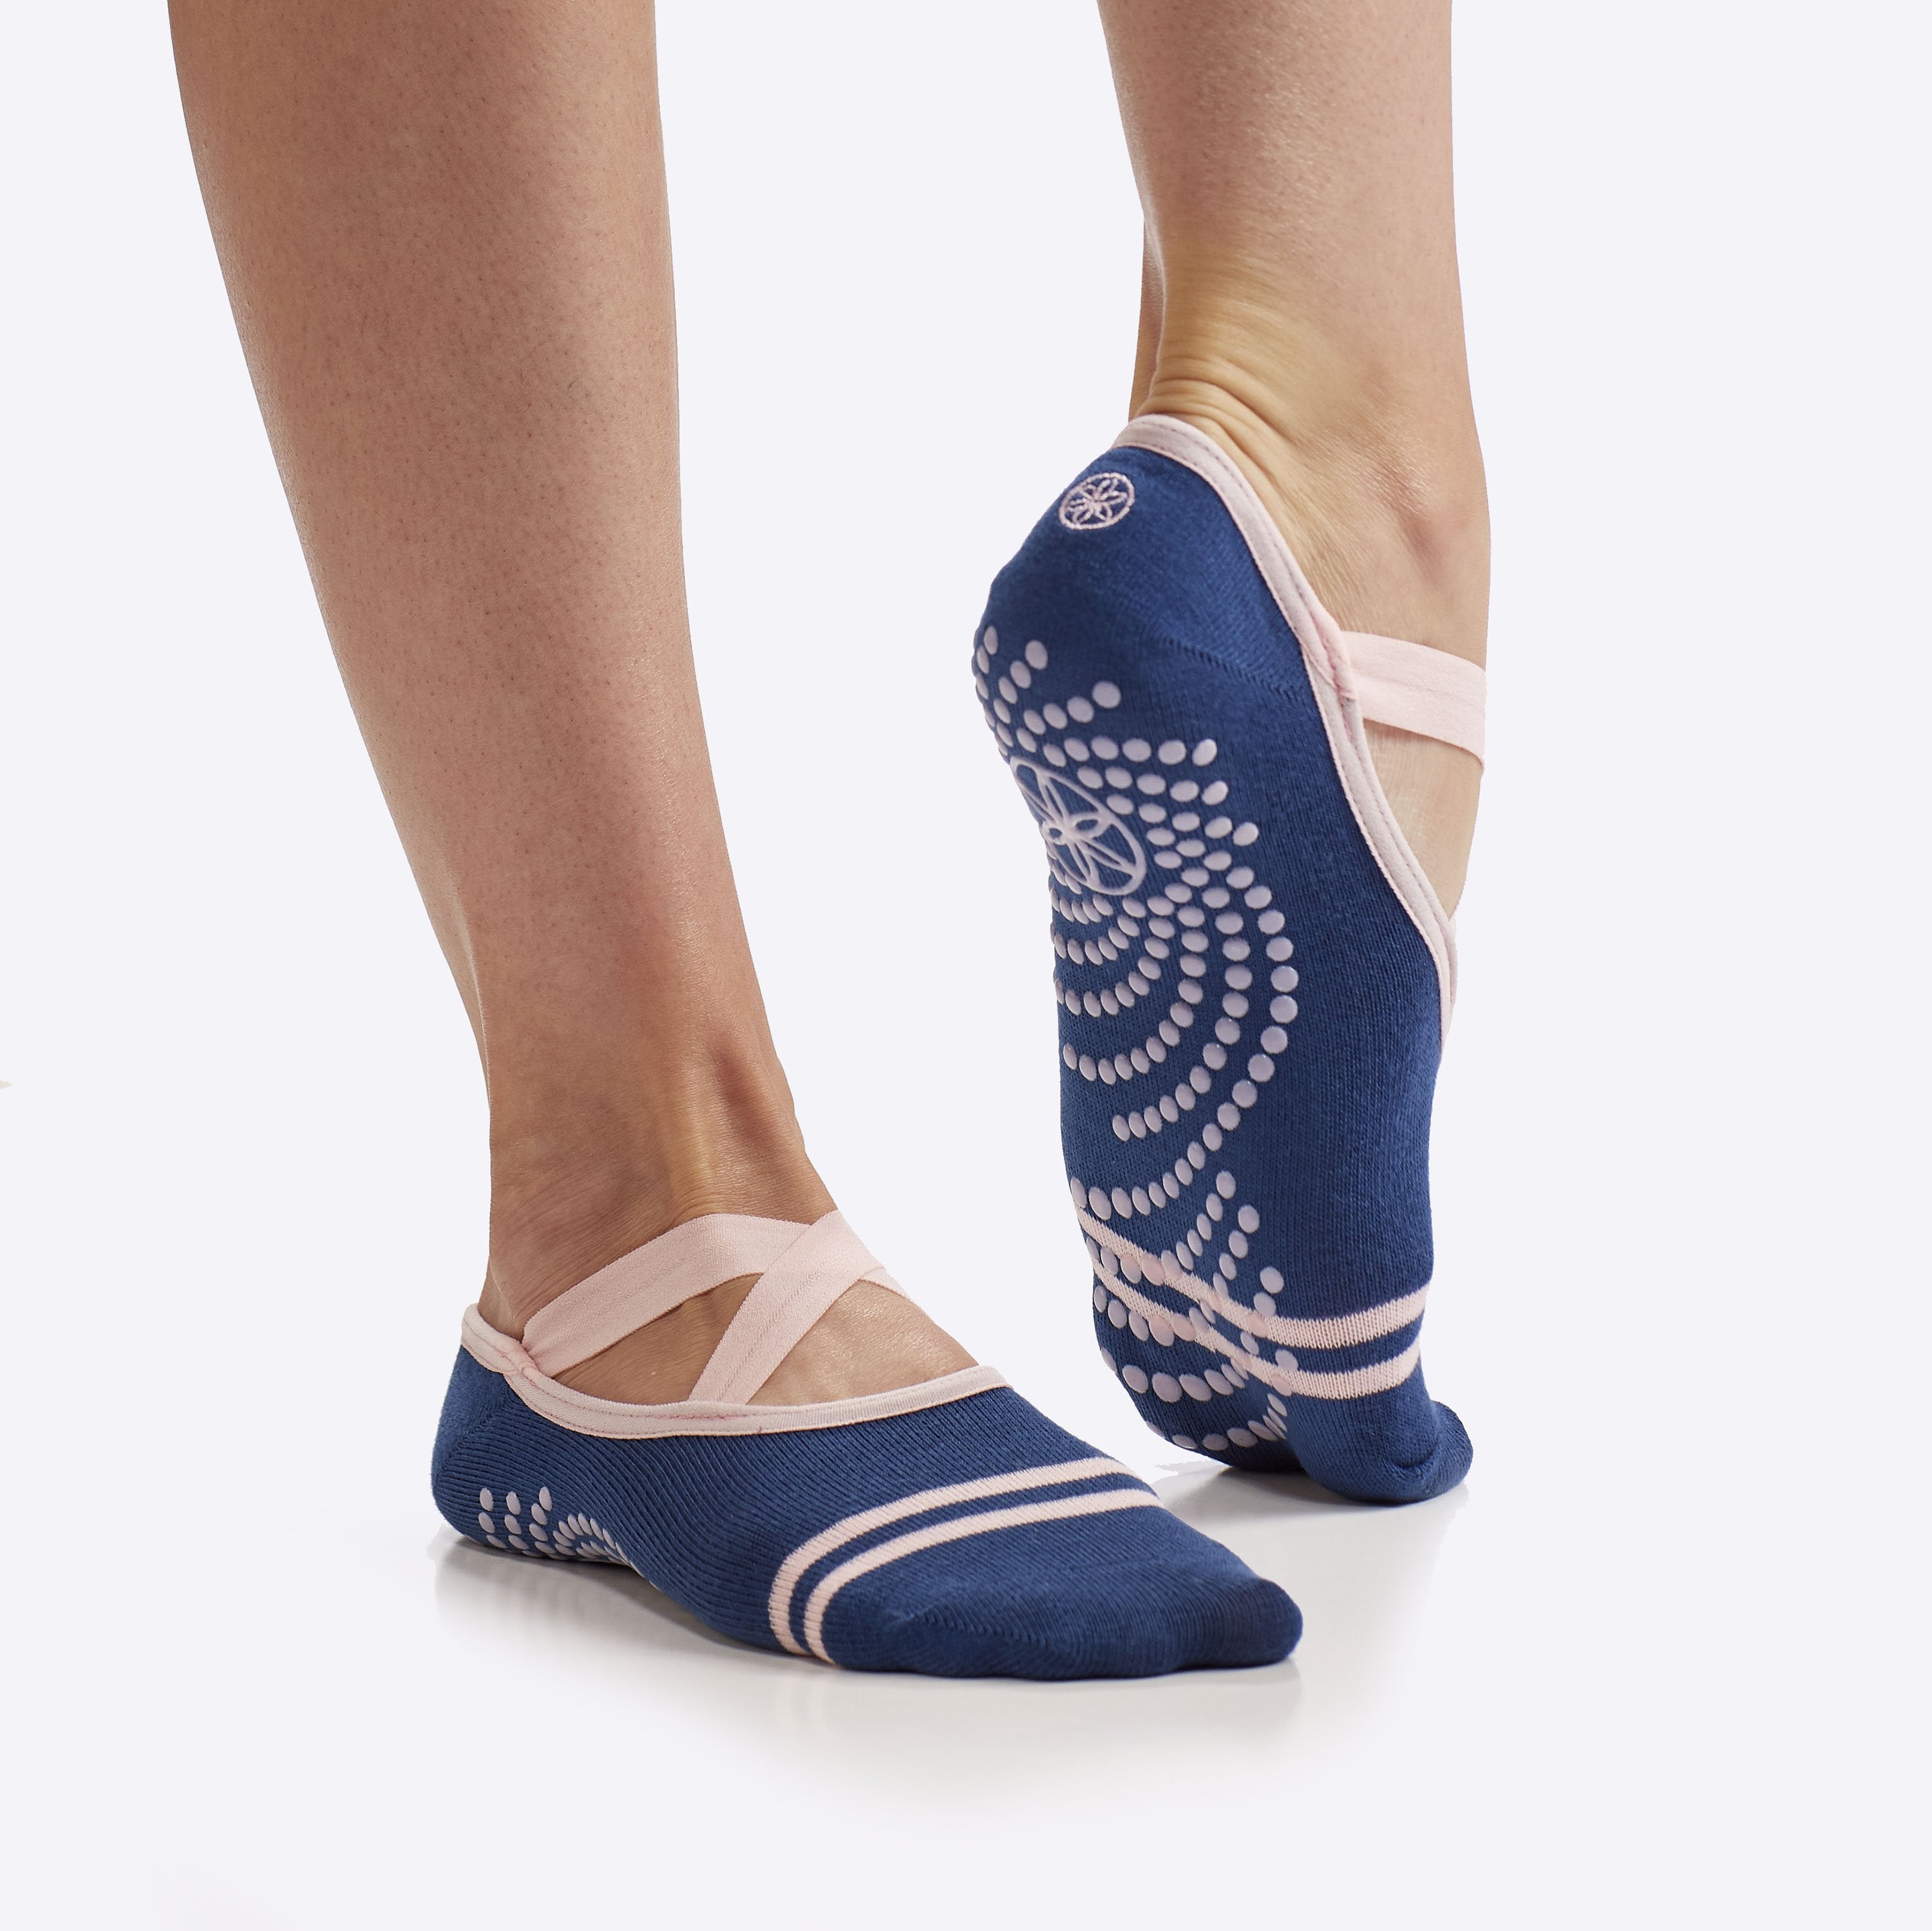 Yoga Socks for Women & Men ??Full Toe Non Slip Sticky Grip Accessories for  Yoga, Barre, Pilates, Dance, Ballet